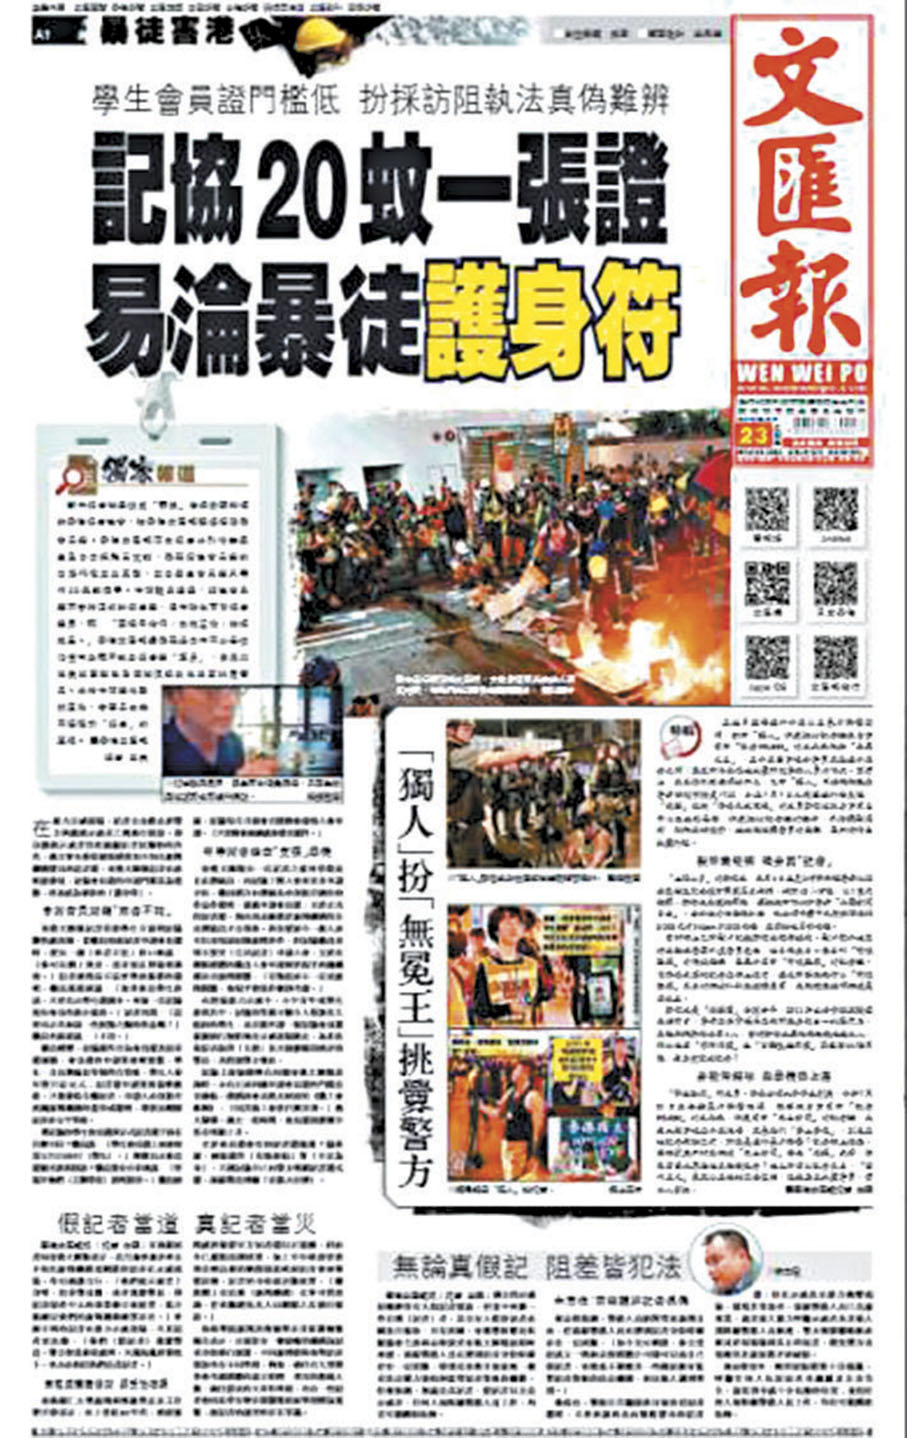 ◆香港文匯報曾踢爆「記協」學生會員證只需20元，涉縱容「黑記」阻警執法。 資料圖片